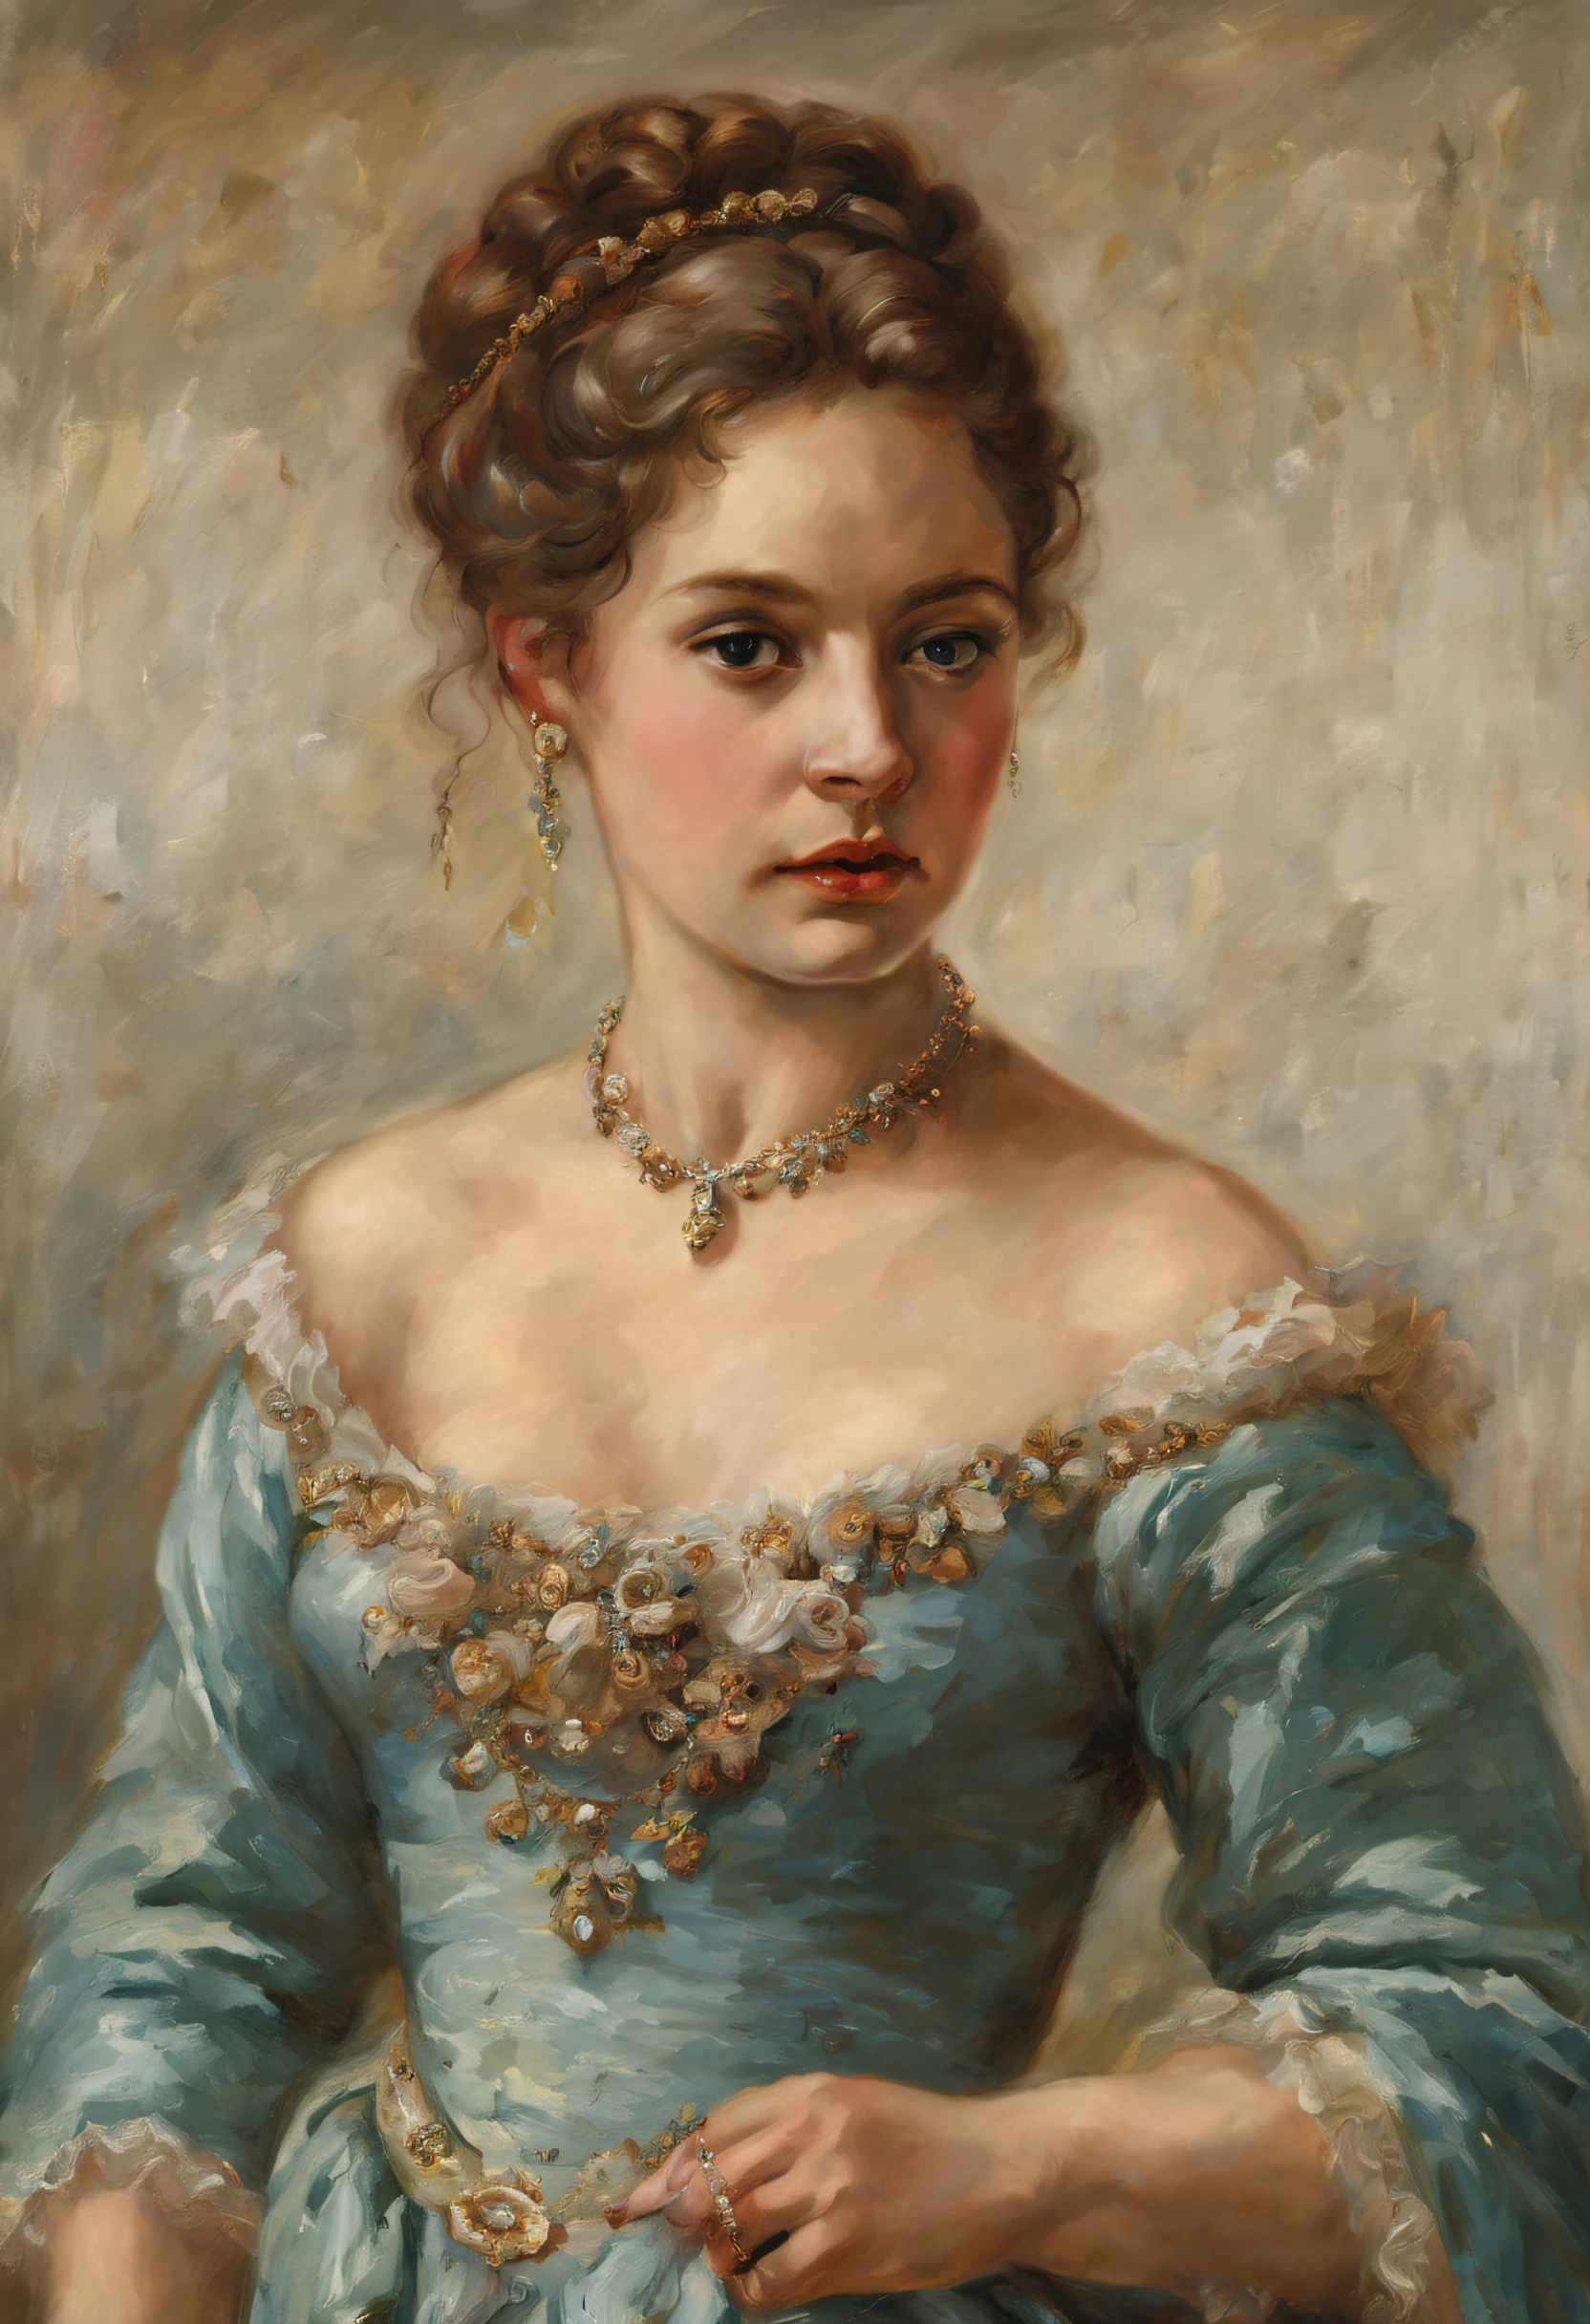 유진 폰 블라스(Eugene von Blaas) 스타일의 유화를 그린 아름다운 젊은 여성의 초상화, (무도회복을 입고), 다이아몬드 목걸이와 함께, ((고급스러운 머리로))